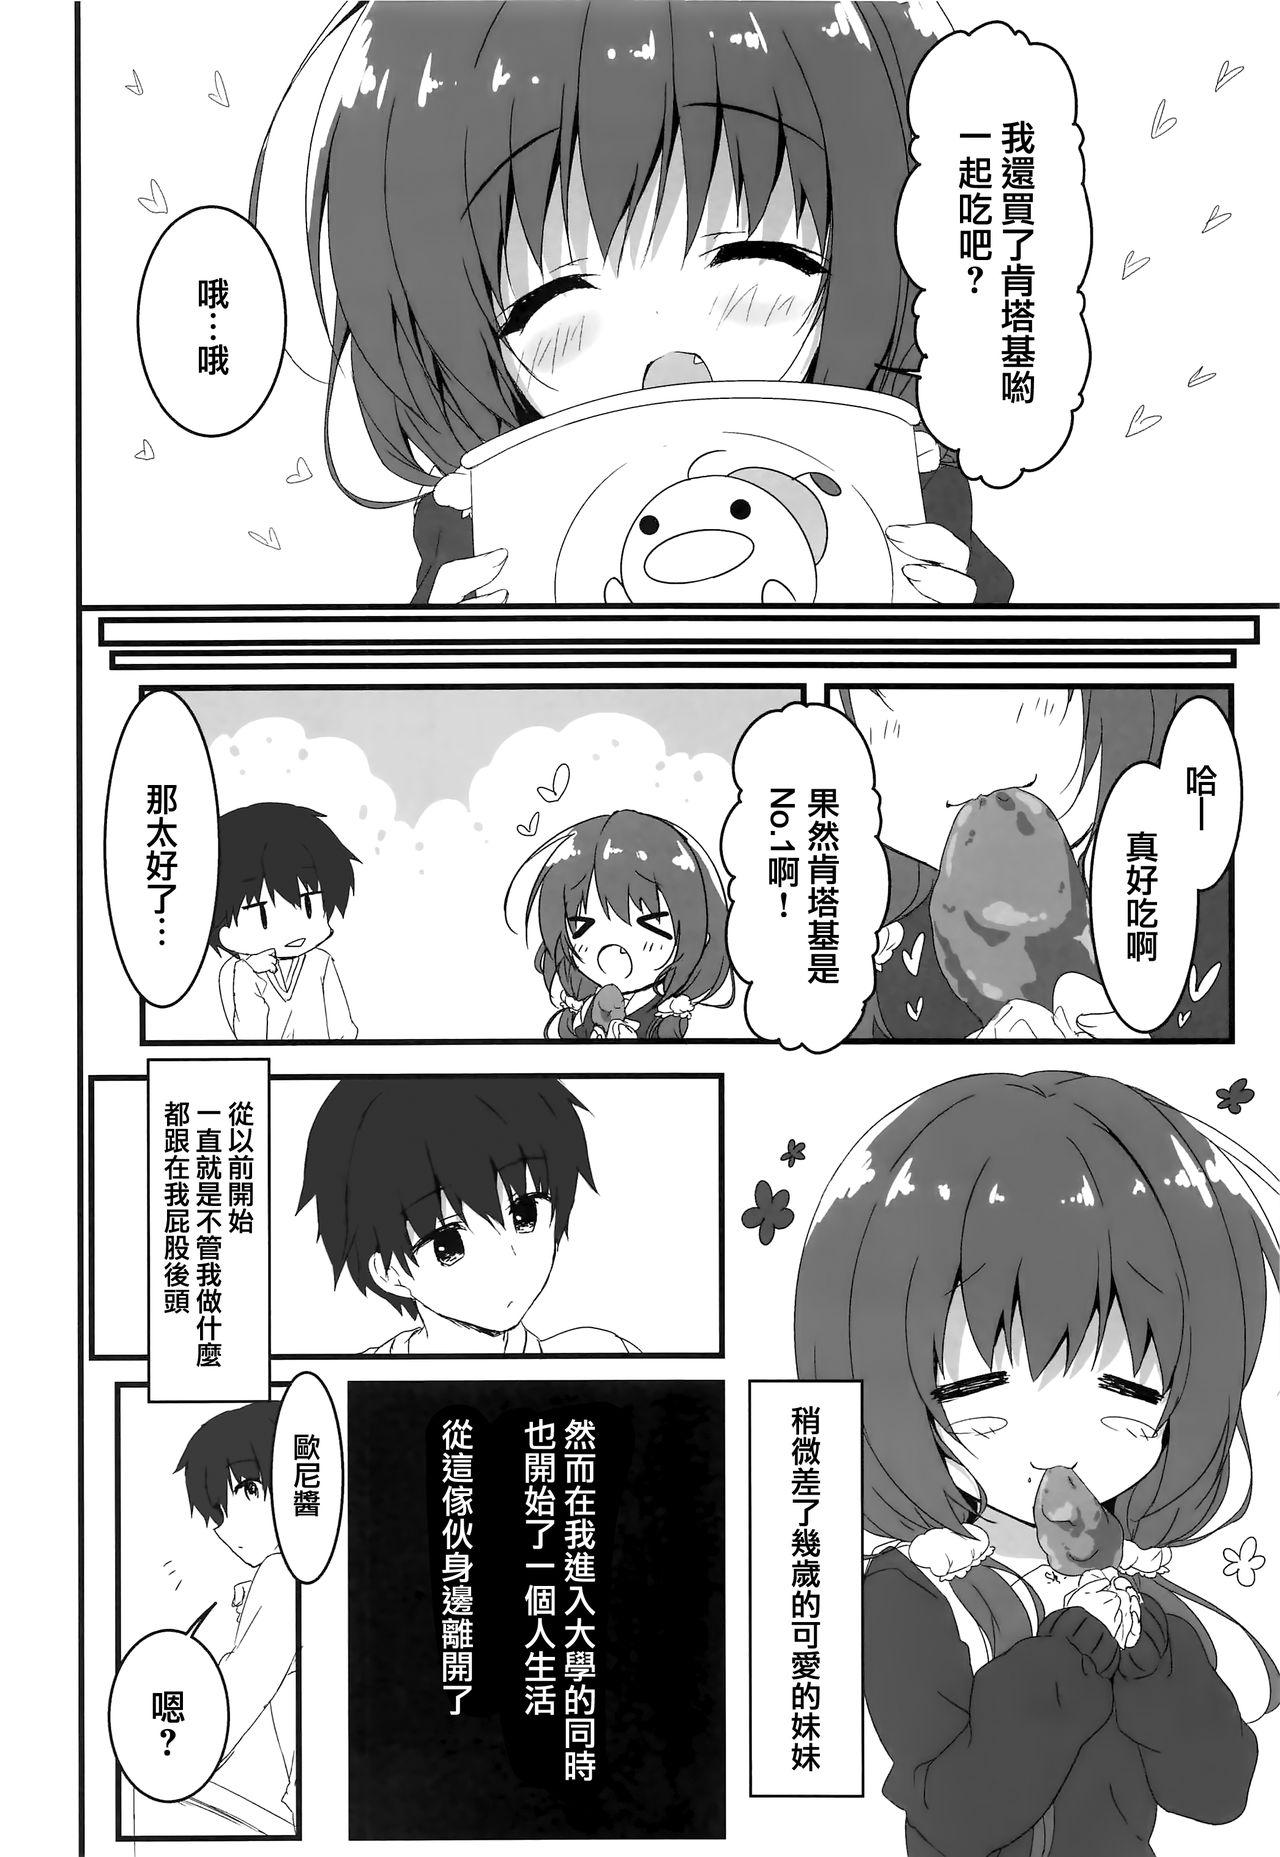 Mas Gomennasai, Onii-chan ga Suki desu. - Original Gostosas - Page 6